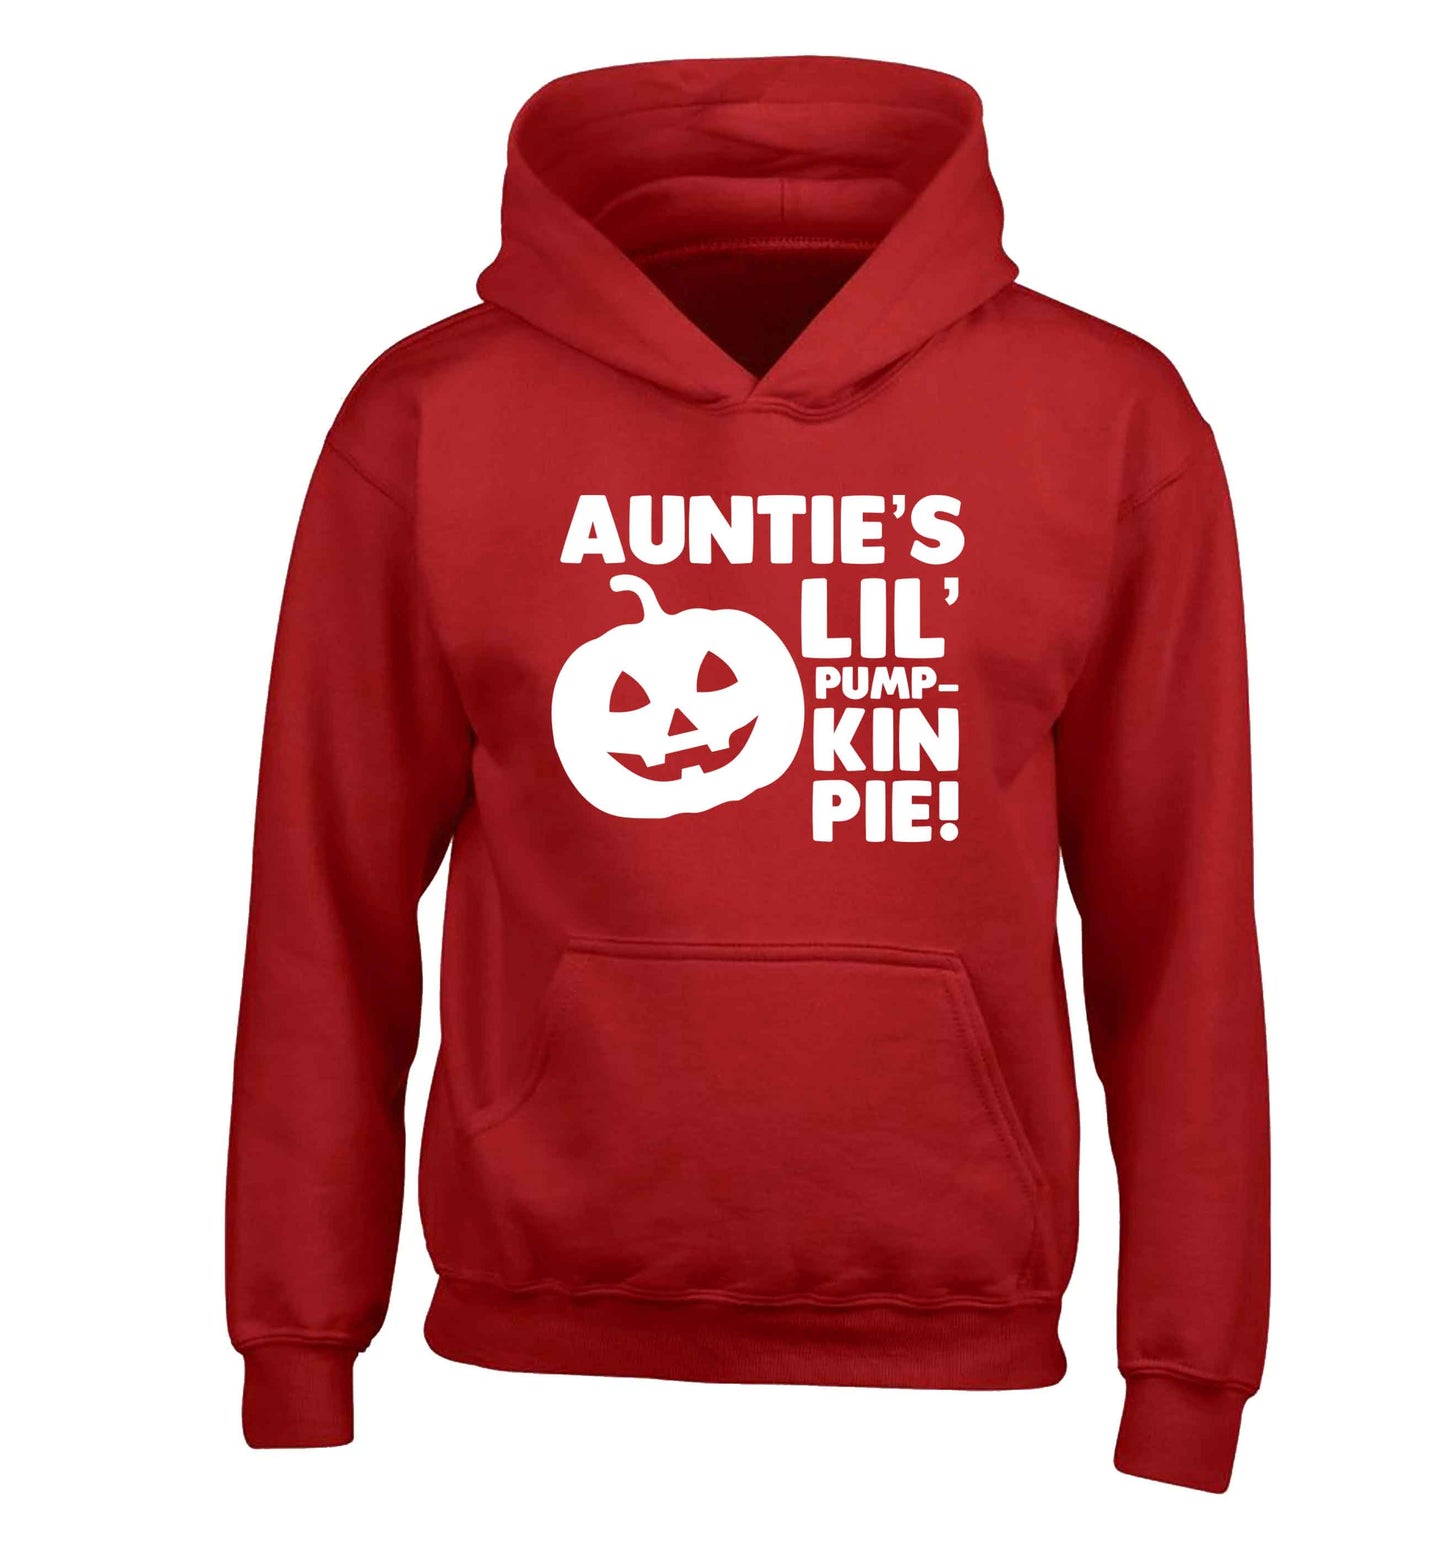 Auntie's lil' pumpkin pie children's red hoodie 12-13 Years